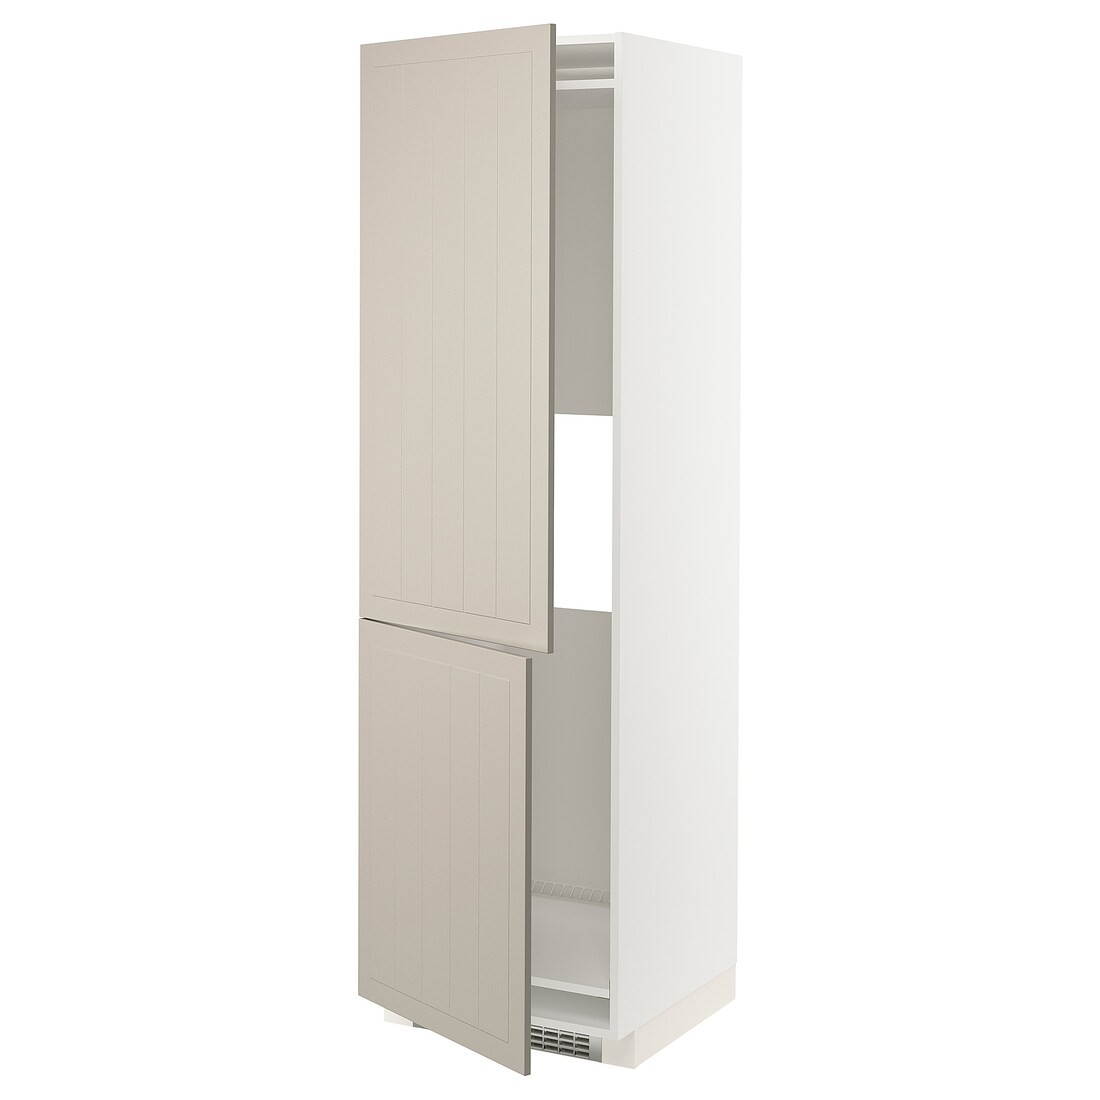 METOD МЕТОД Висока шафа для холодильника / морозильника, білий / Stensund бежевий, 60x60x200 см